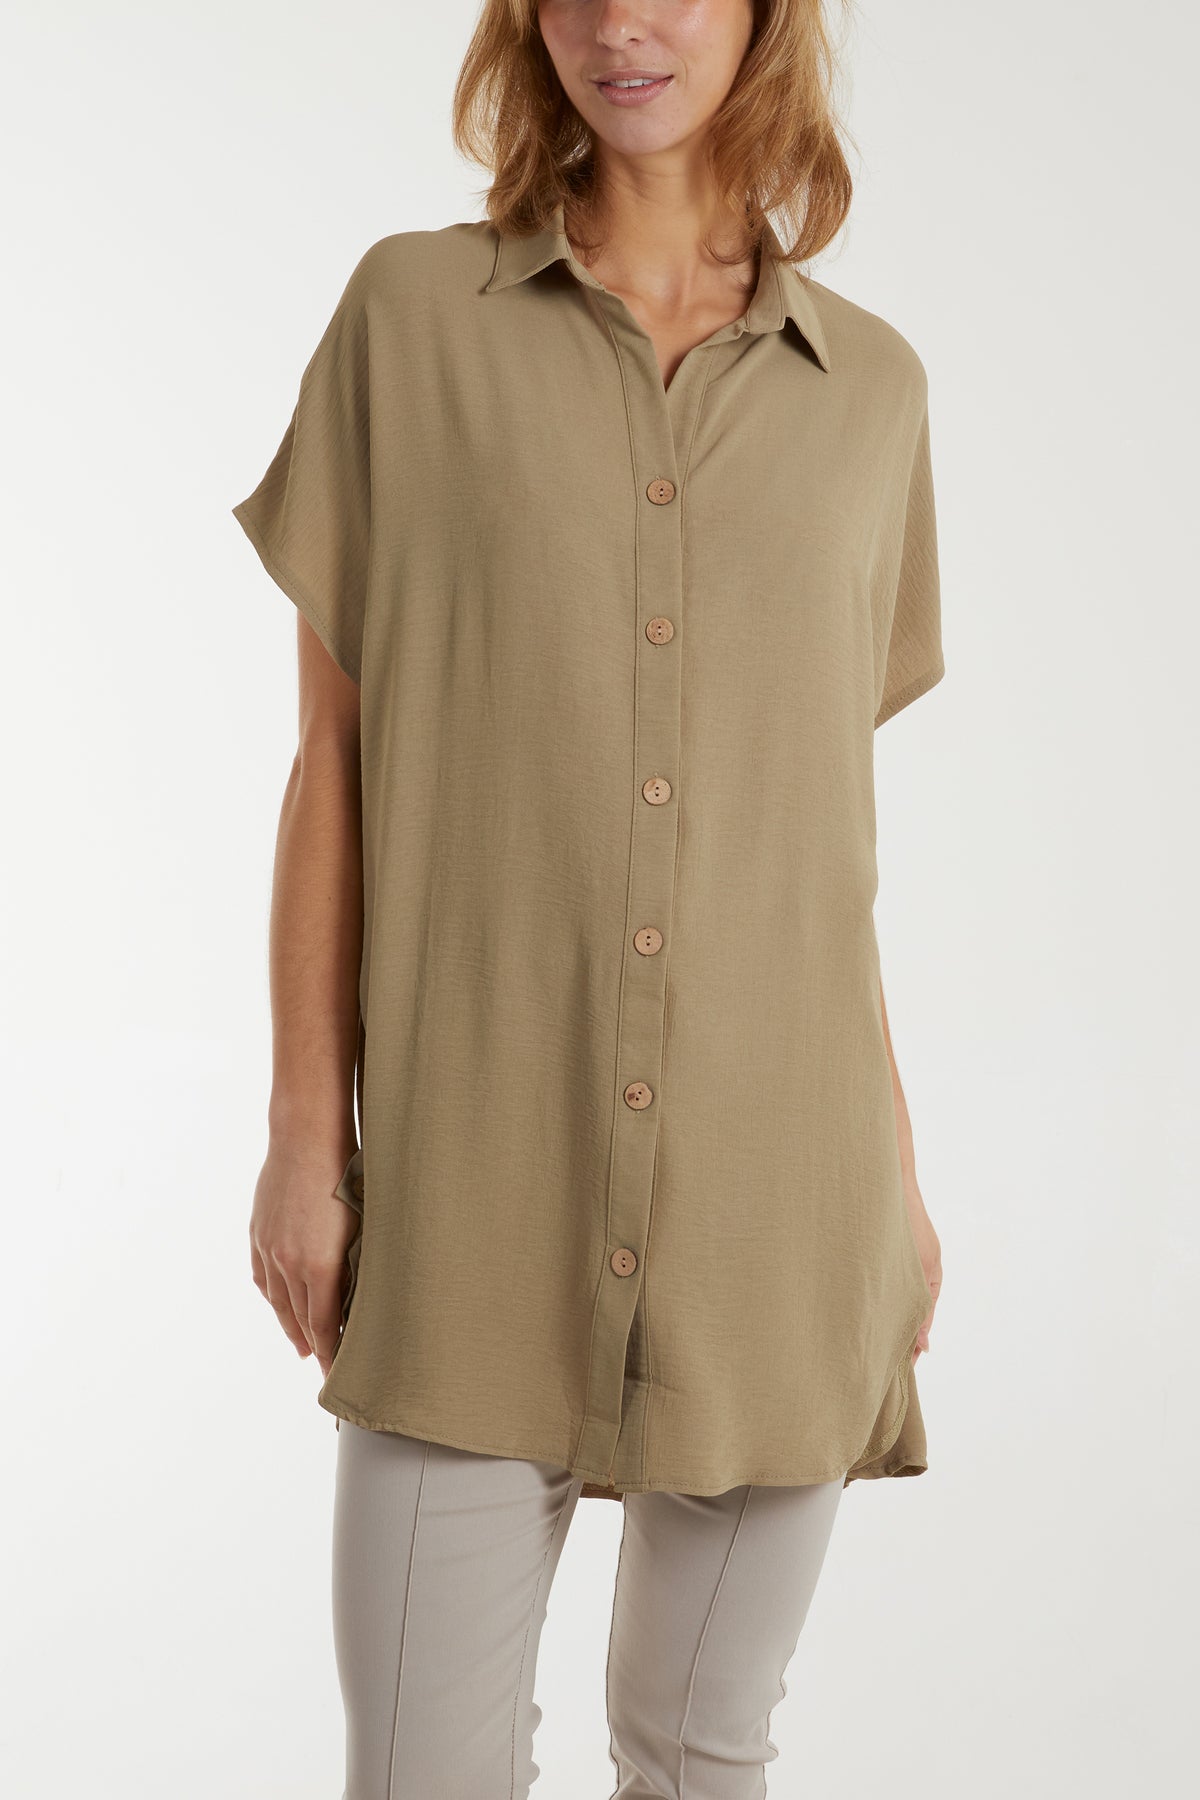 Longline Short Sleeve Button Shirt